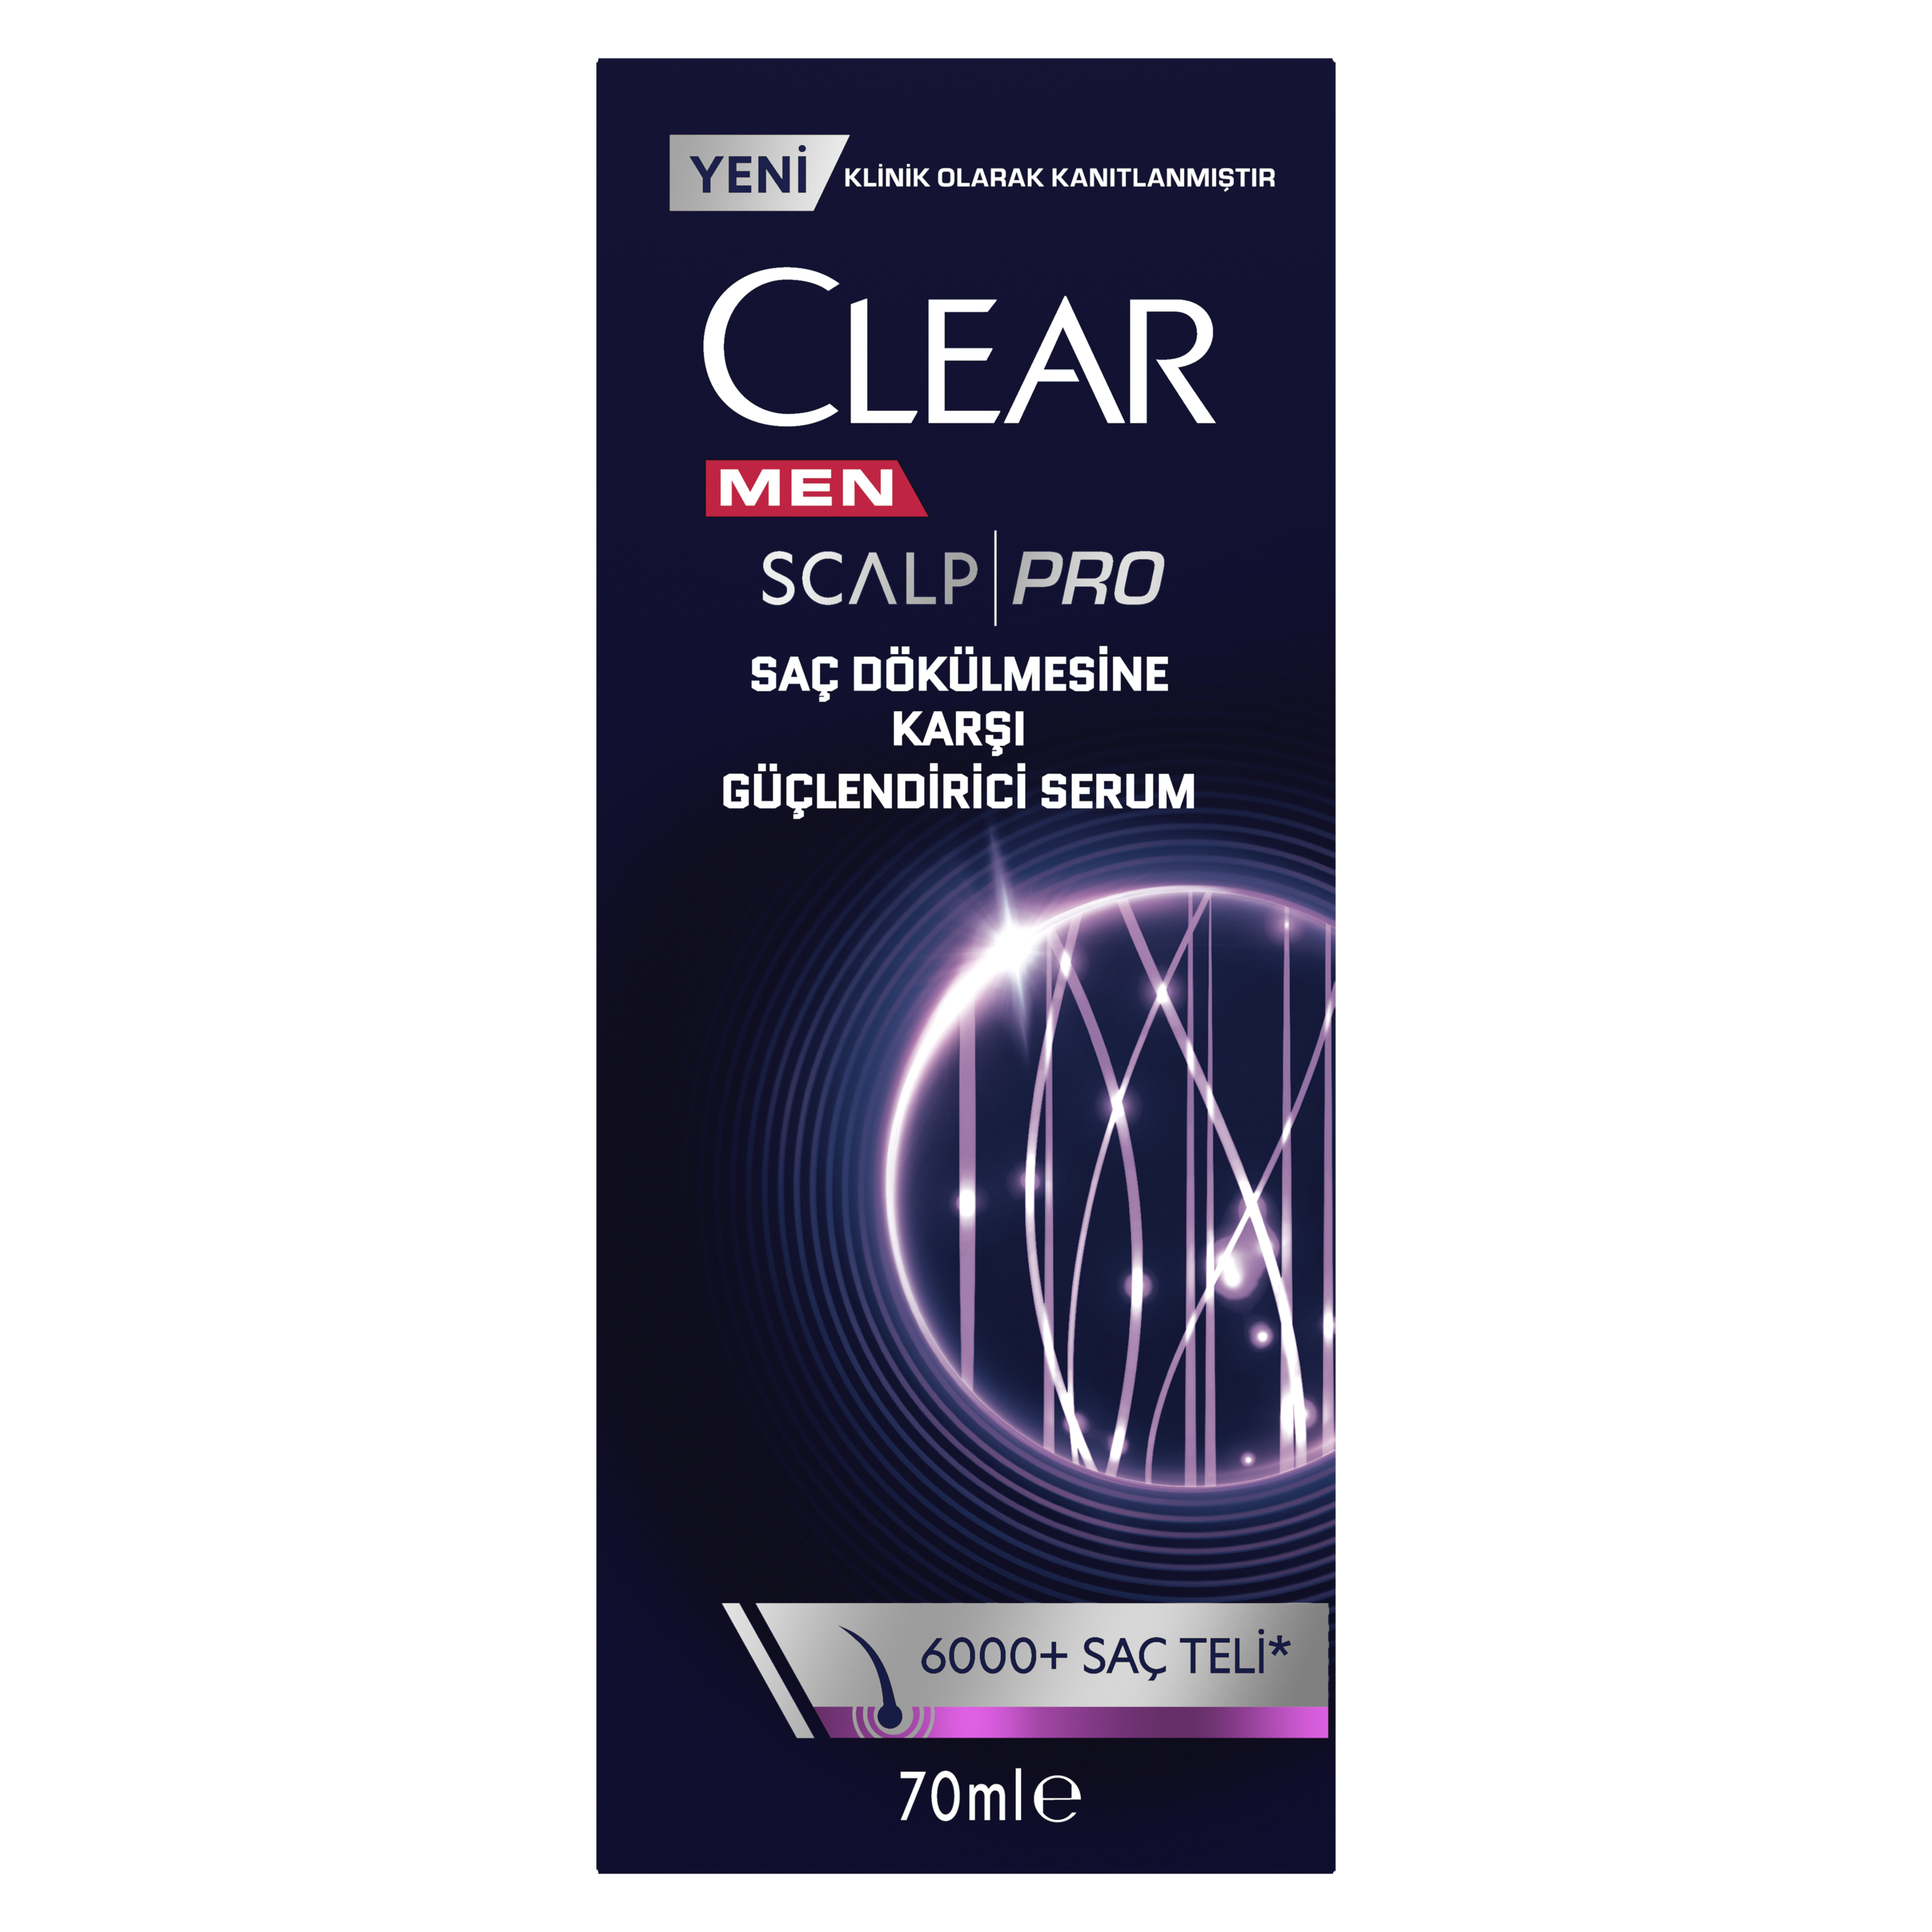 Clear Men Scalp Pro Saç Dökülmesine Karşı Güçlendirici Serum